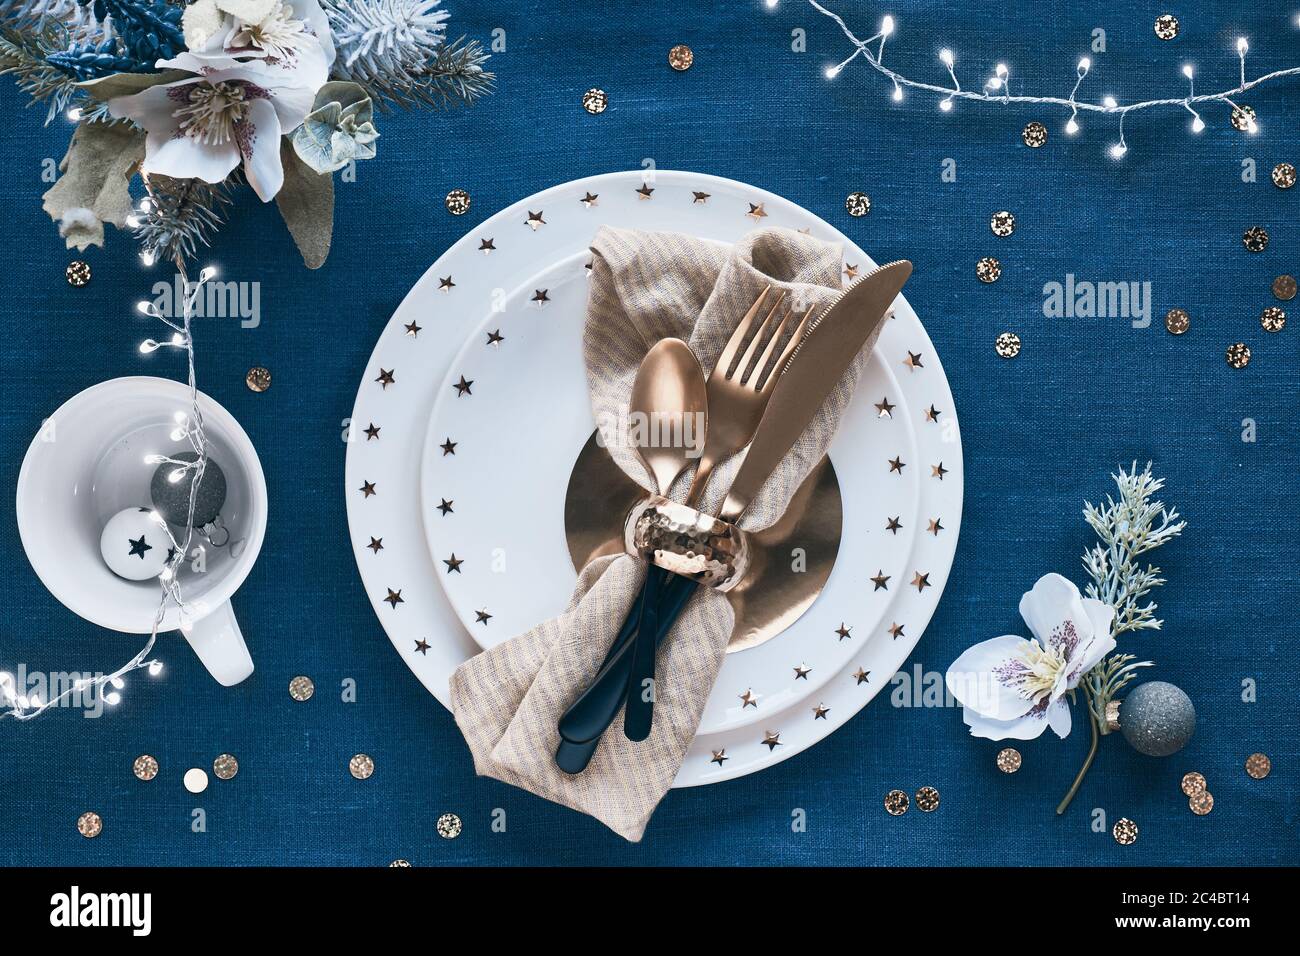 Tavolo natalizio con piatto bianco e utensili dorati e decorazioni dorate. Disposizione piatta, vista dall'alto su sfondo in tessuto di lino blu scuro. Xmas ligh Foto Stock